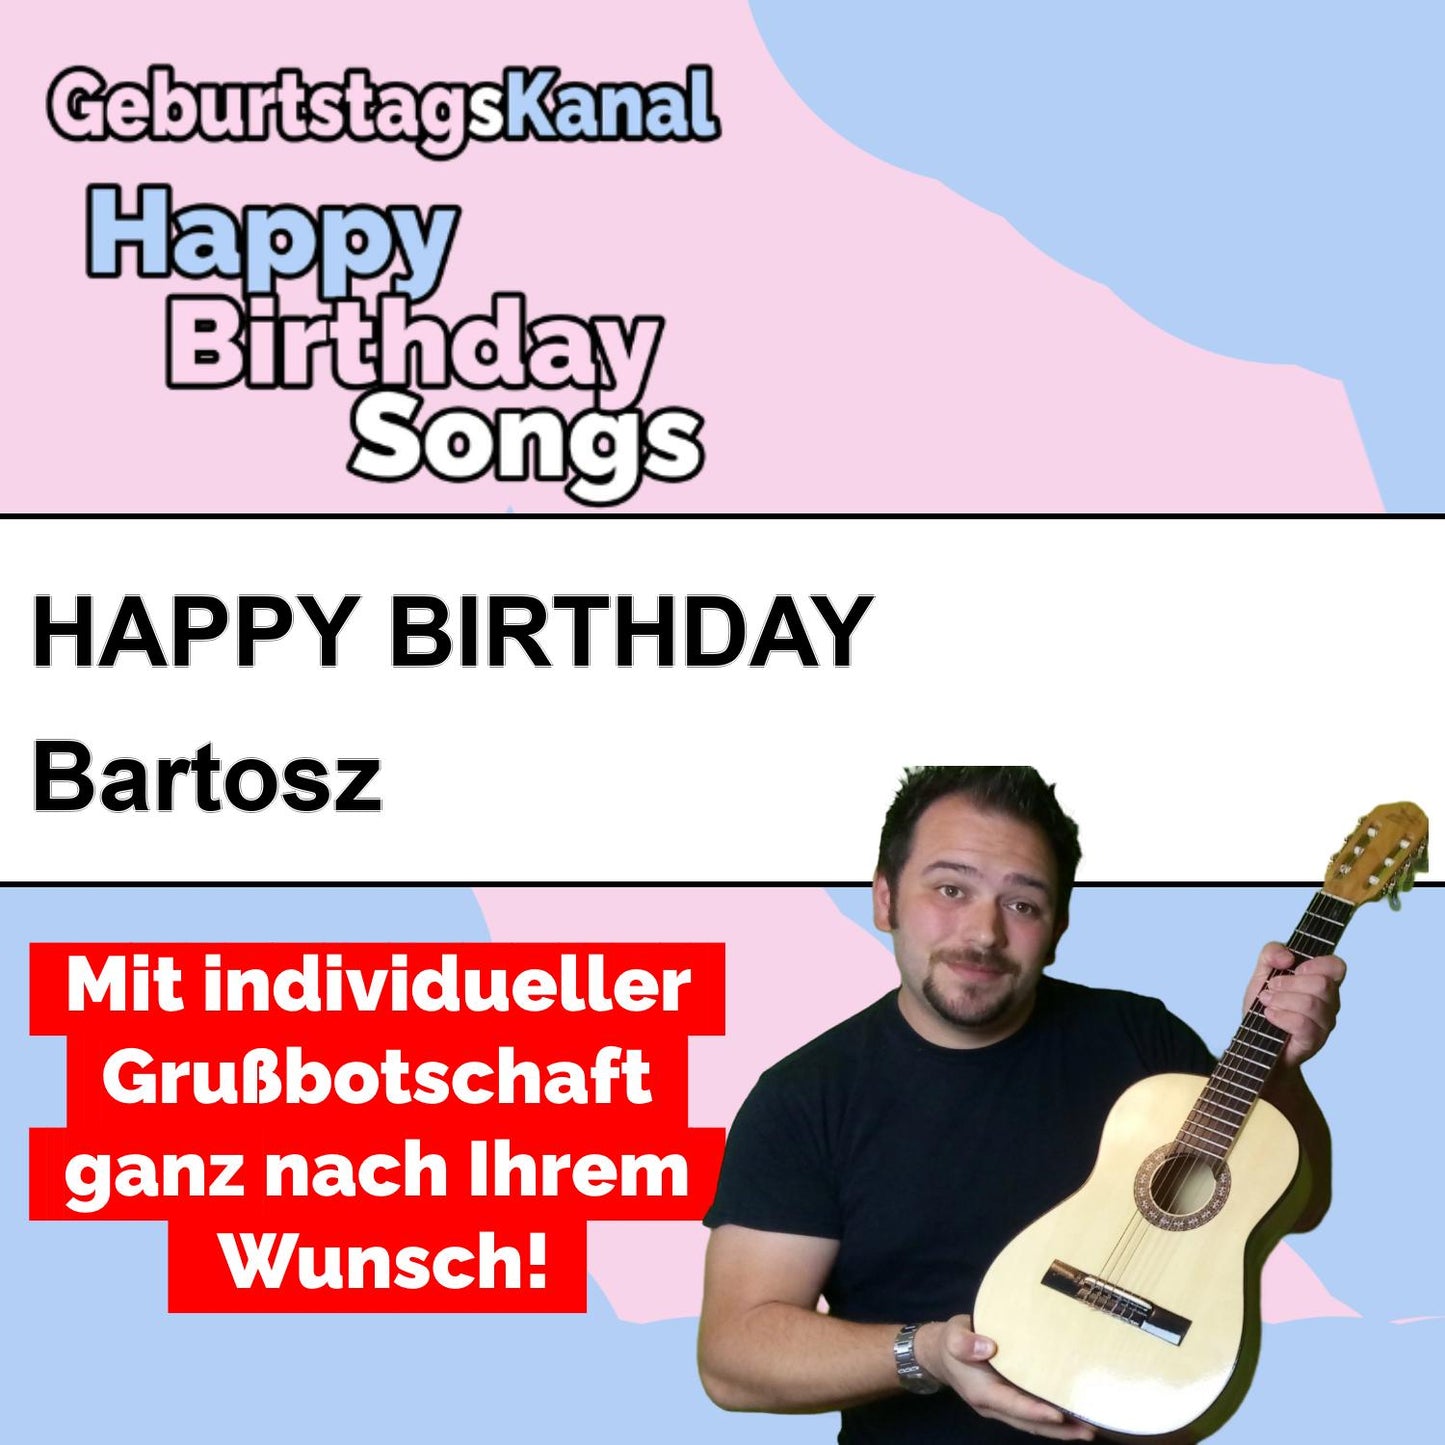 Produktbild Happy Birthday to you Bartosz mit Wunschgrußbotschaft